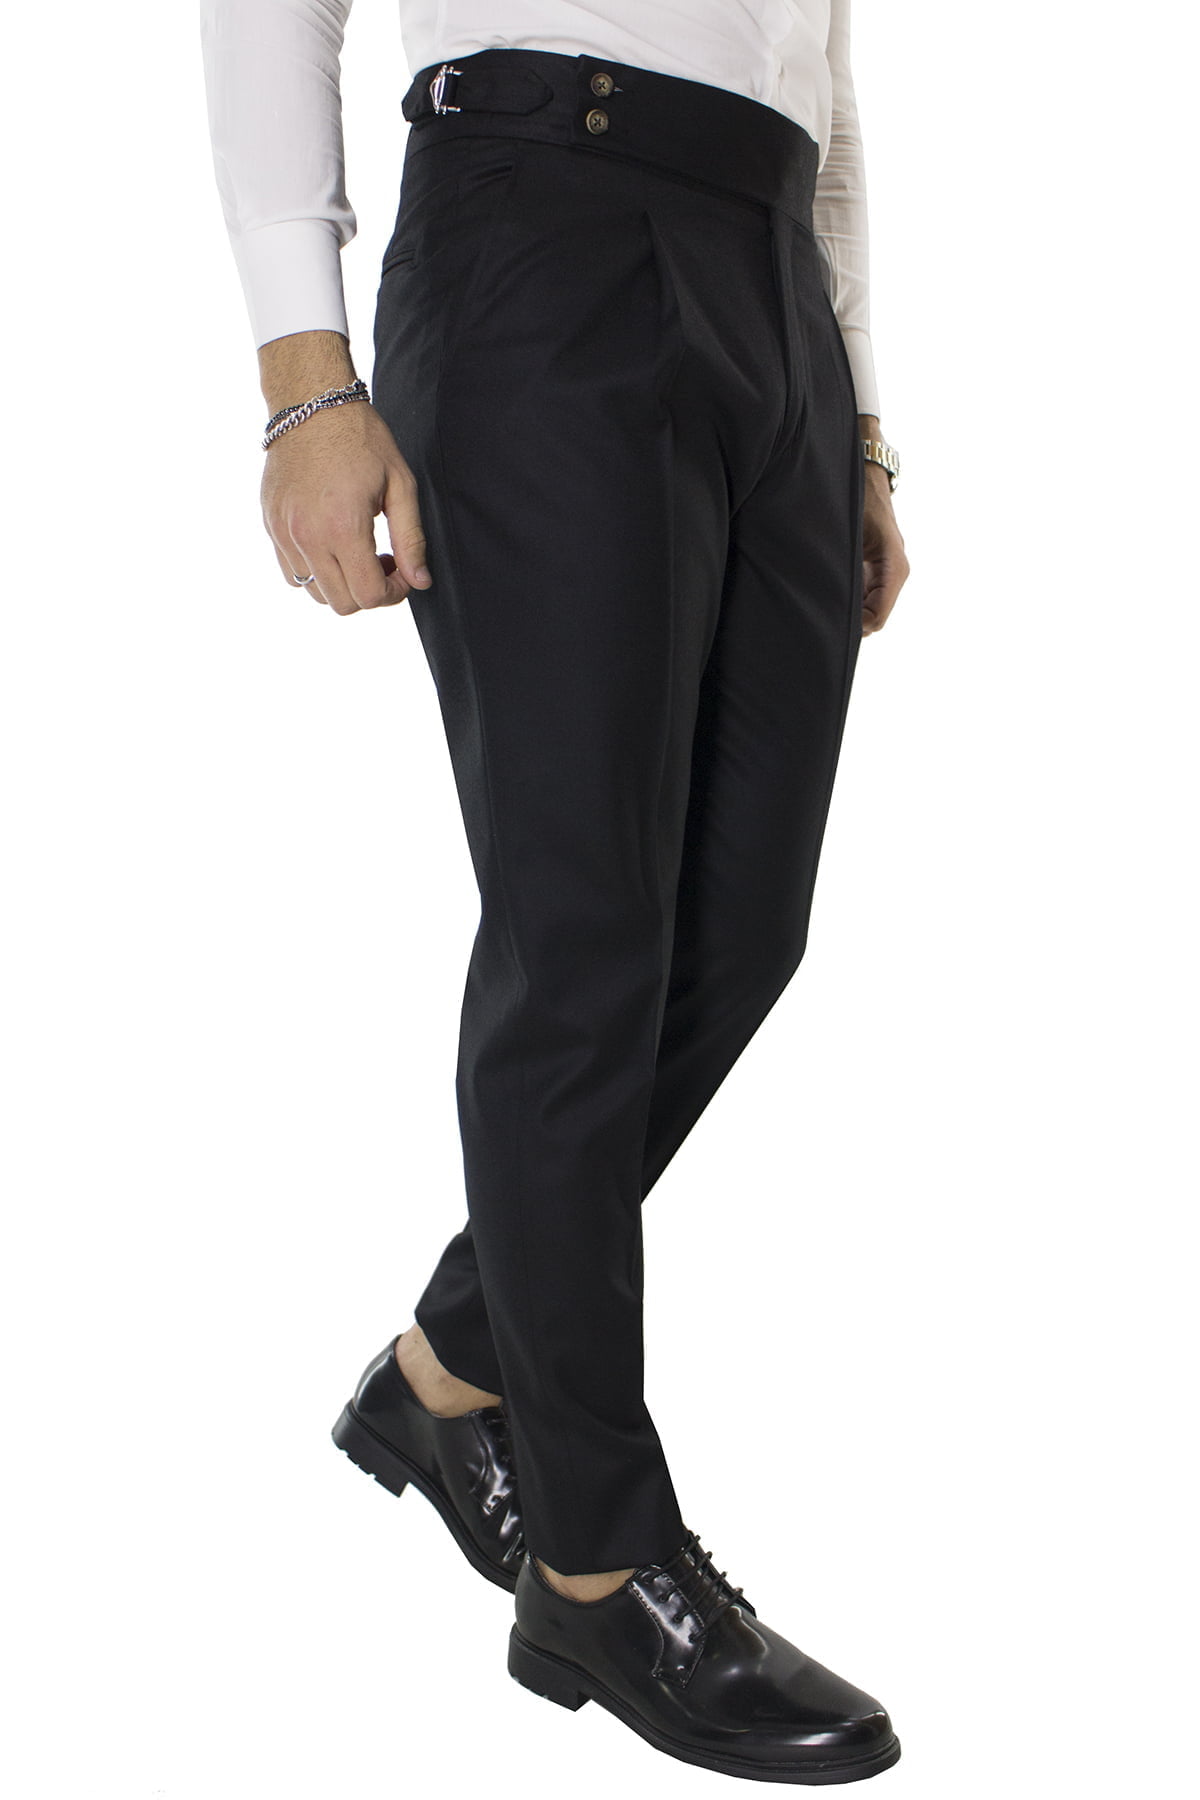 Pantalone uomo nero in lana vita alta con pinces e fibbie laterali vitale barberis canonico